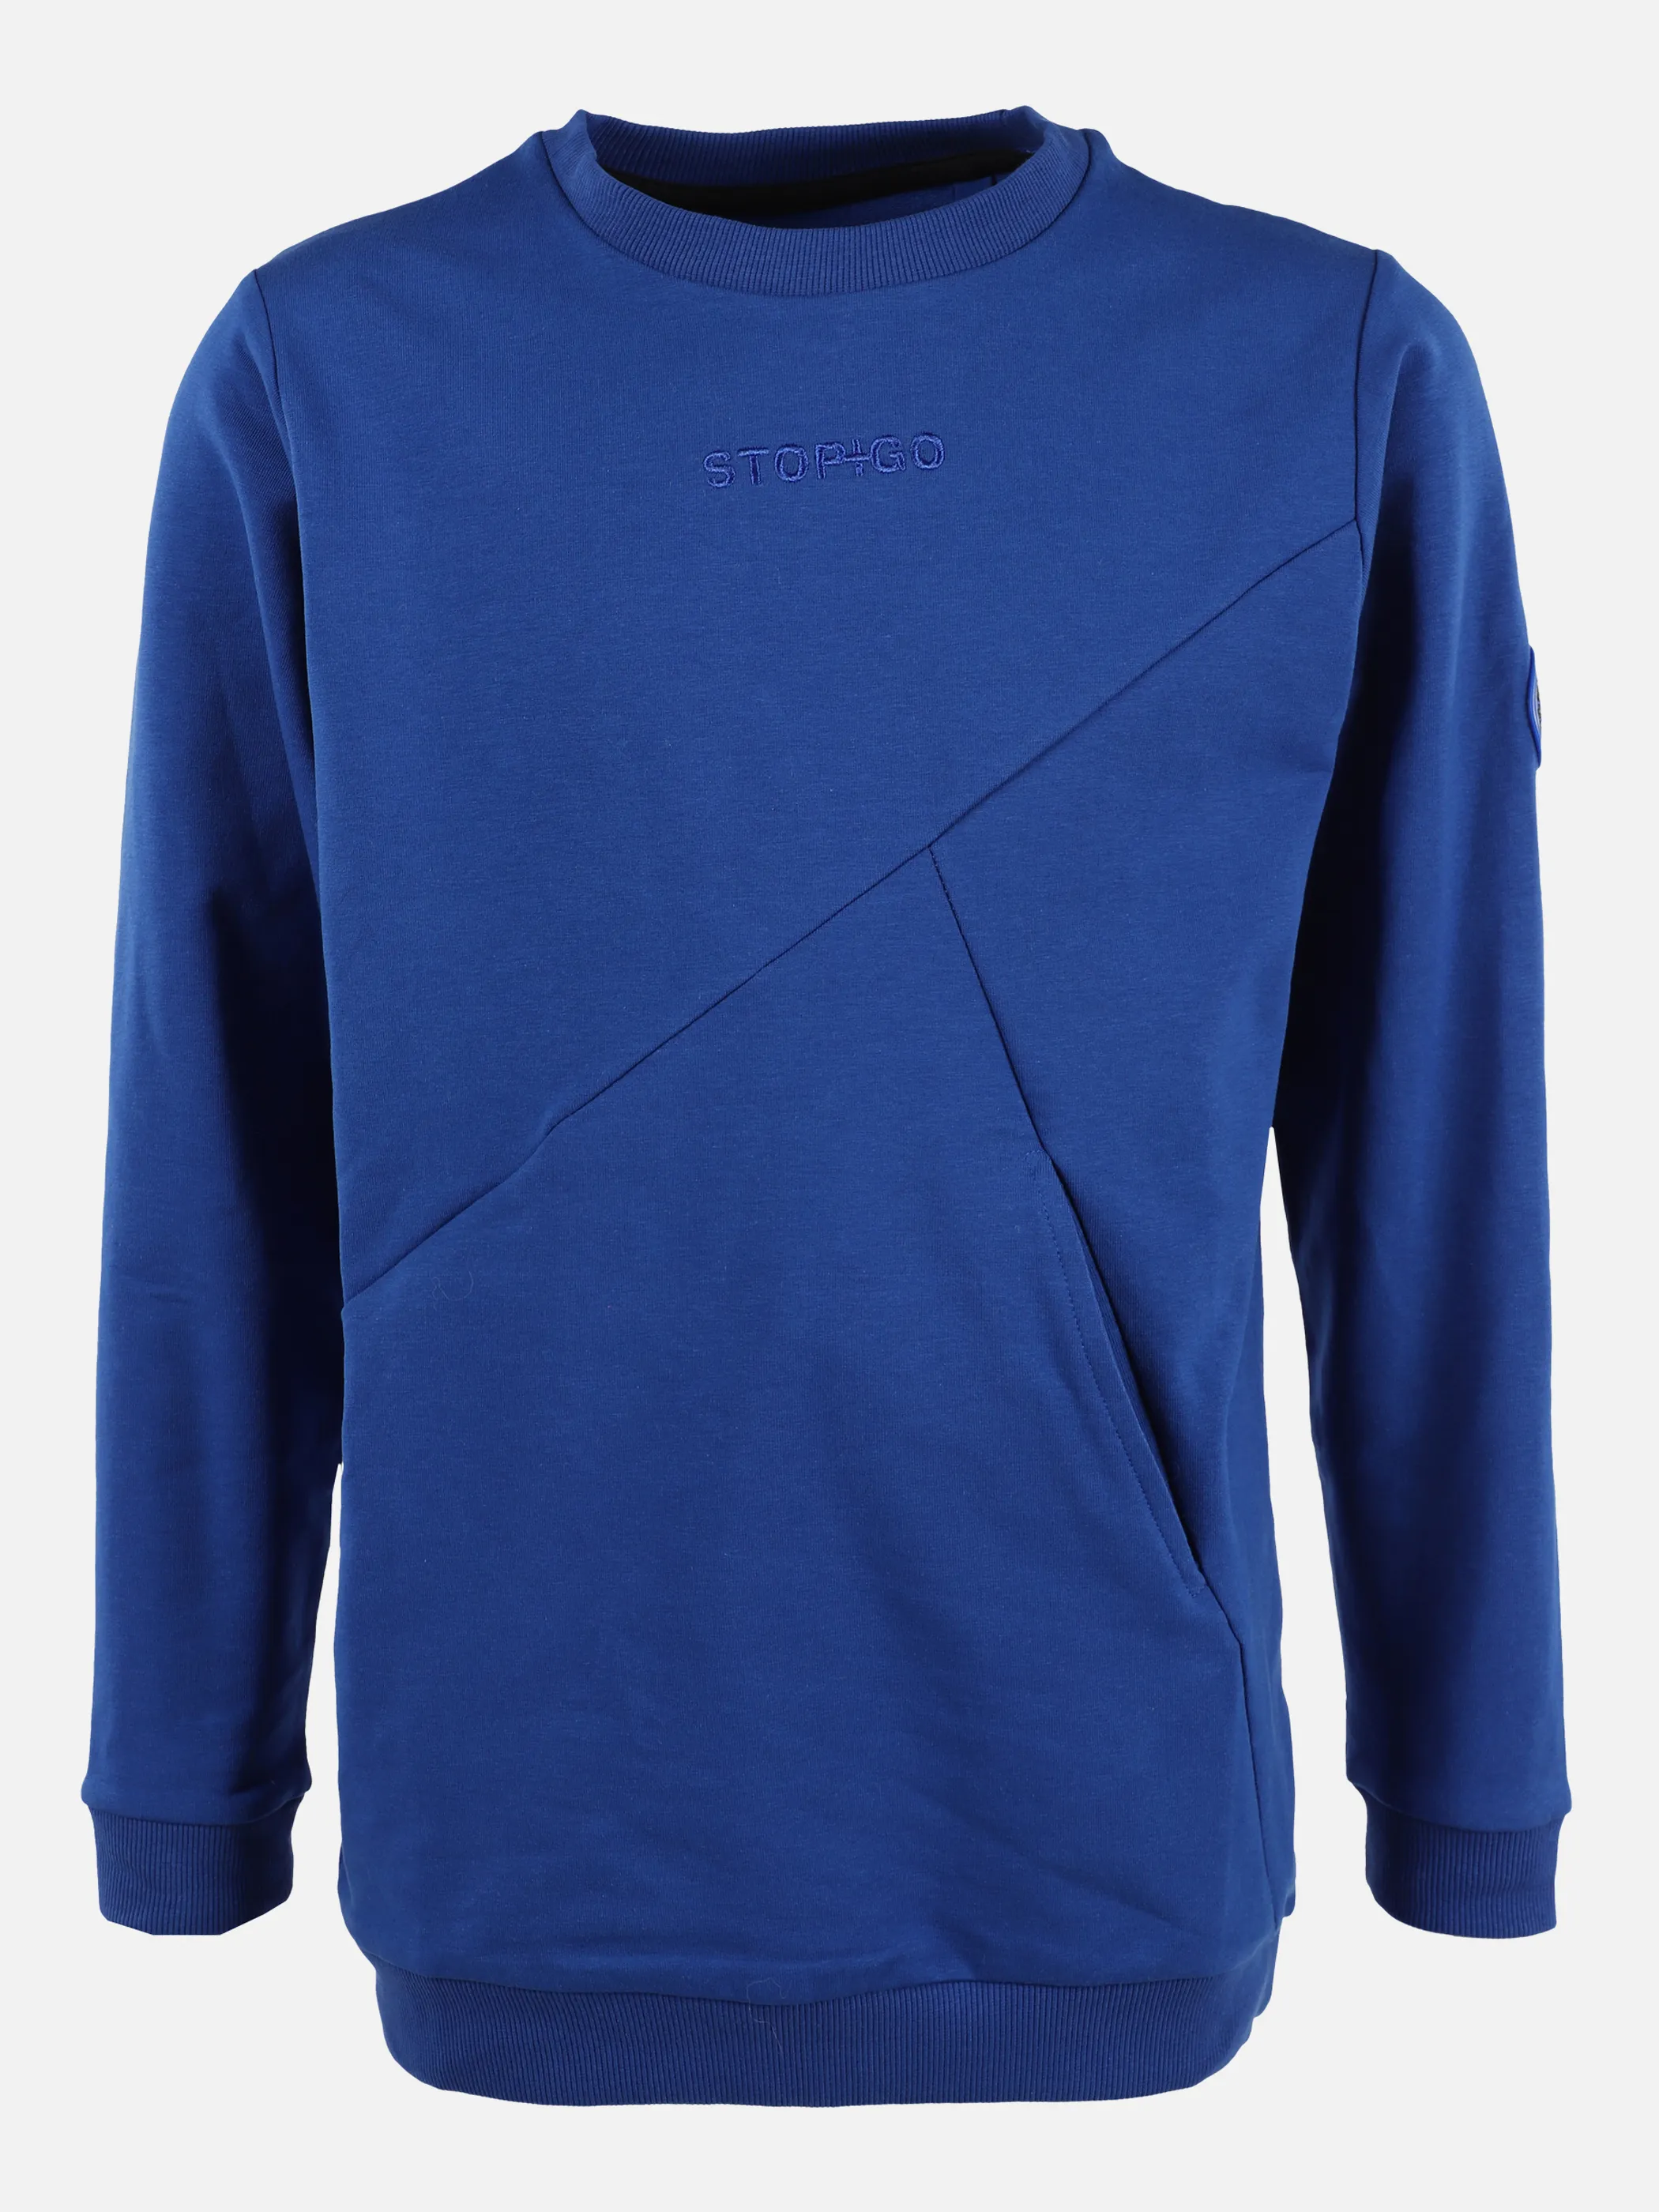 Stop + Go JJ Sweatshirt mit kleinem Frontdruck Blau 875615 BLAU 1